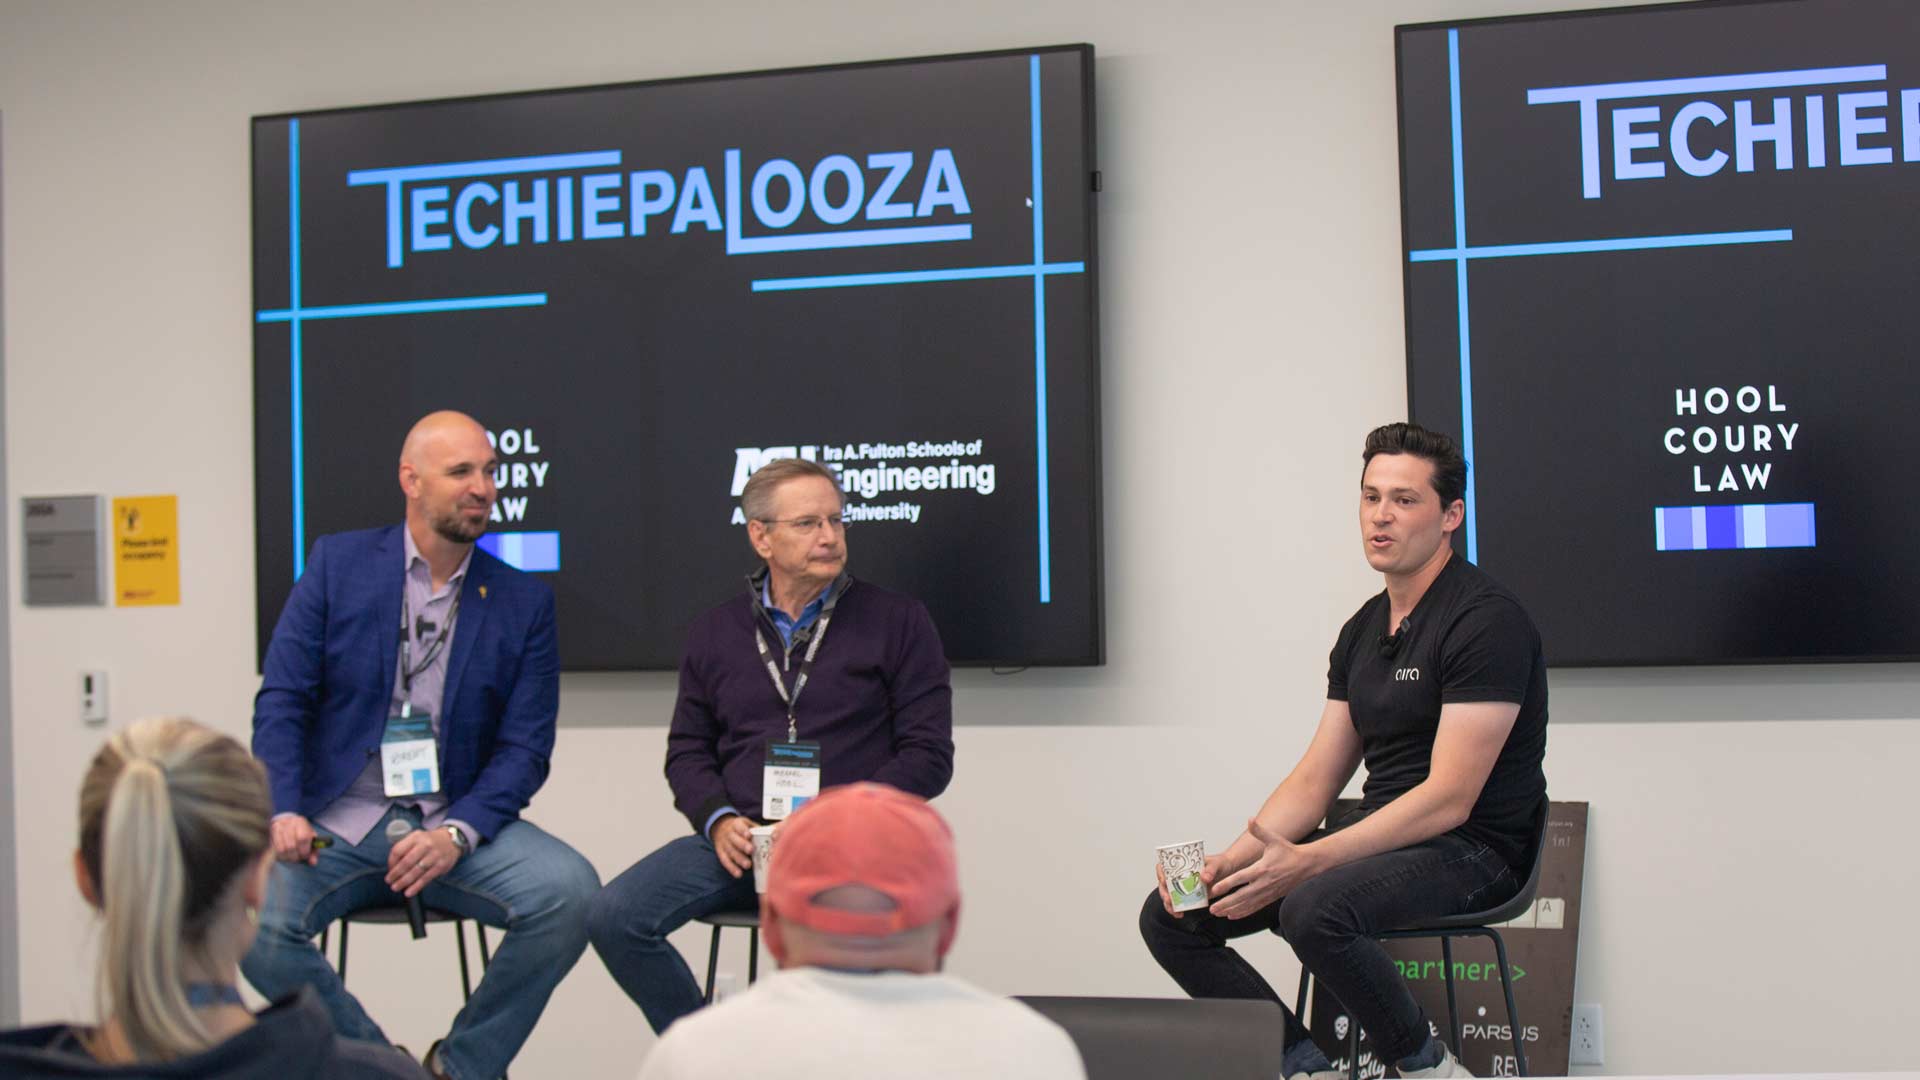 Brent Sebold, Michael Hool and Jake Slatnick at Techiepalooza